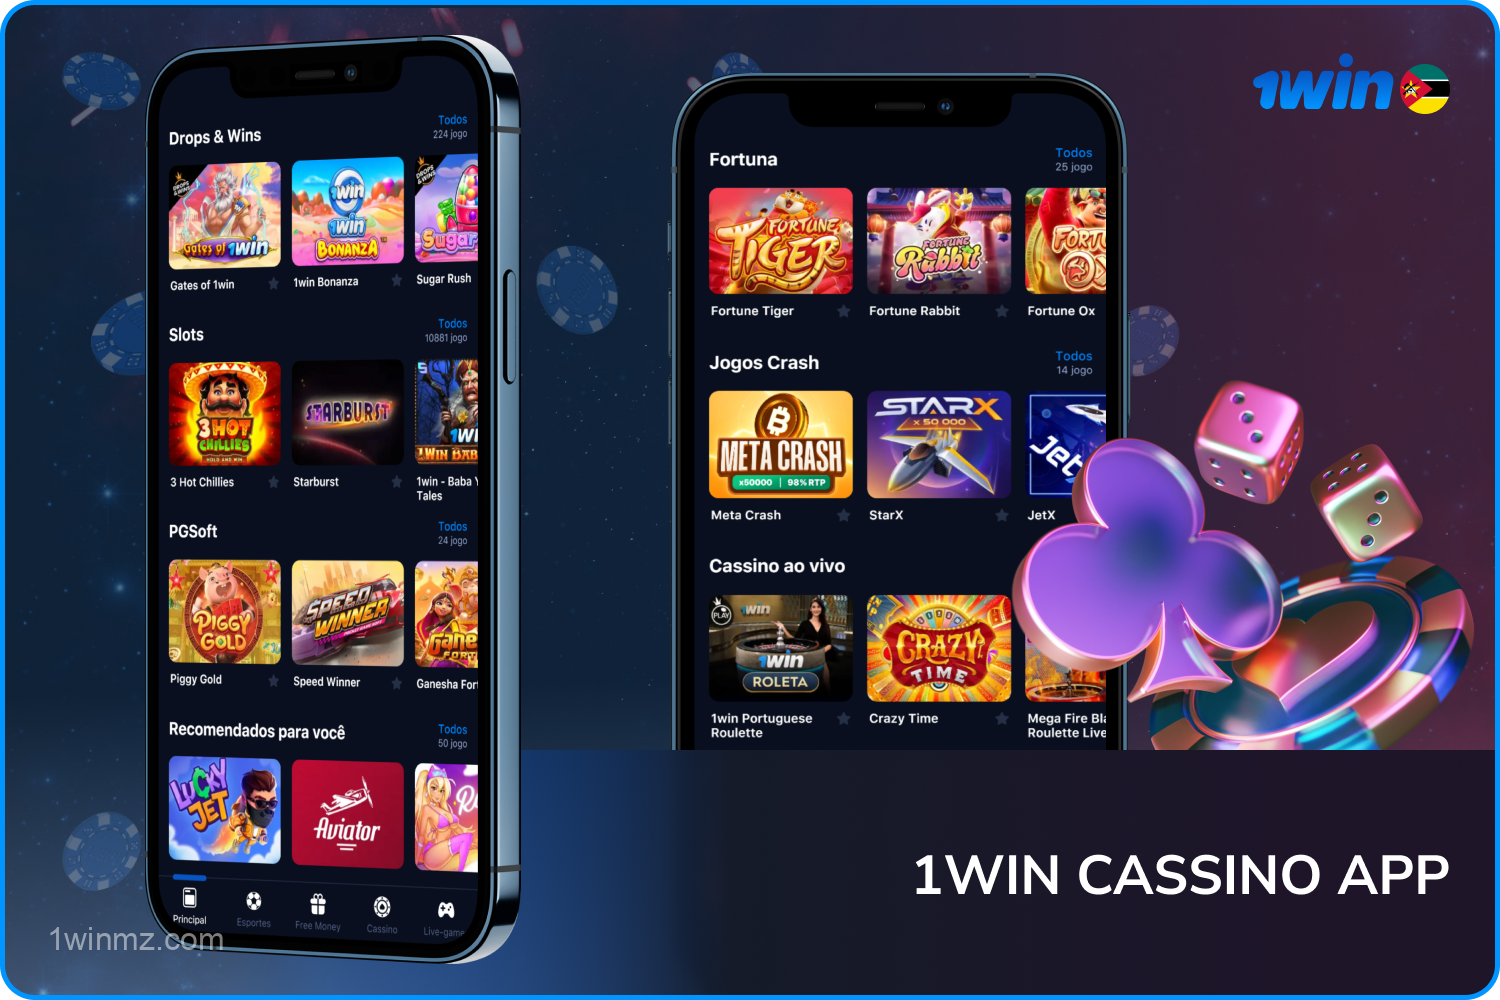 Jogos de casino populares de grandes desenvolvedores estão disponíveis para jogadores de Moçambique na aplicação móvel 1win para Android e iOS